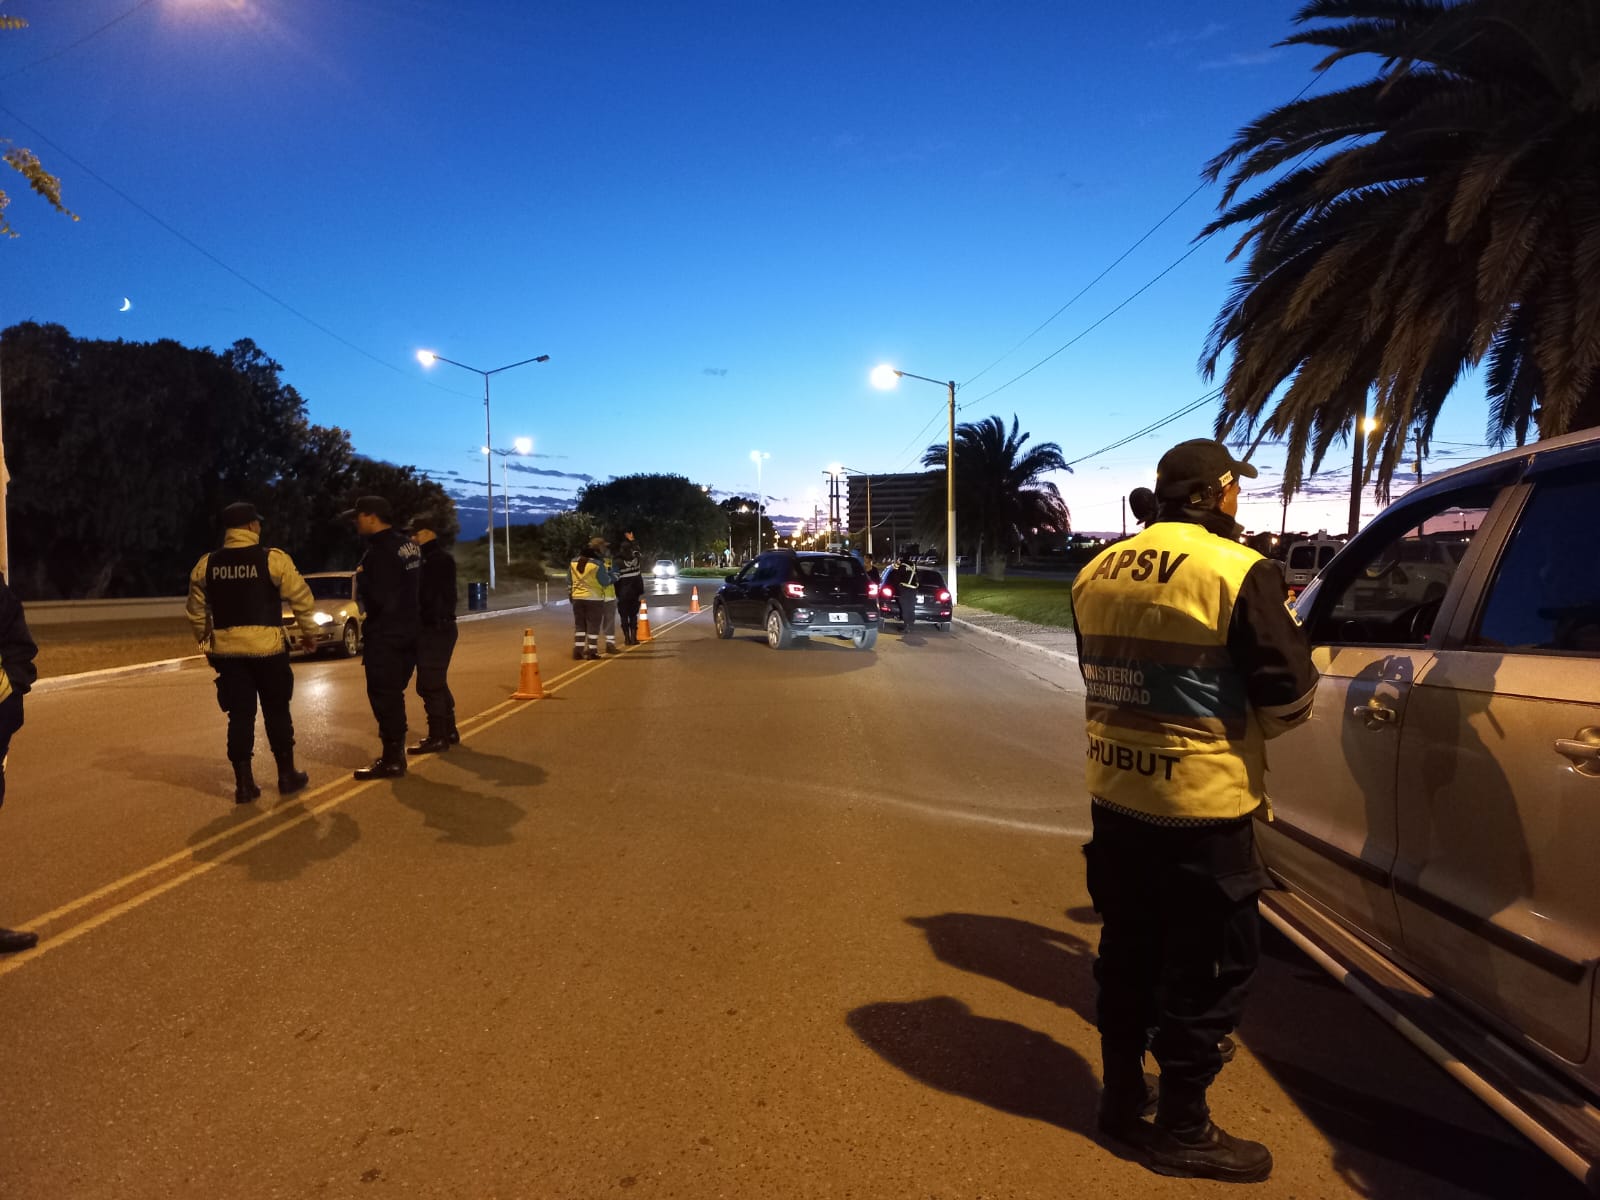 Seguridad vial: Más de 10 mil vehículos controlados y 67 alcoholemias positivas en Chubut durante el fin de semana largo